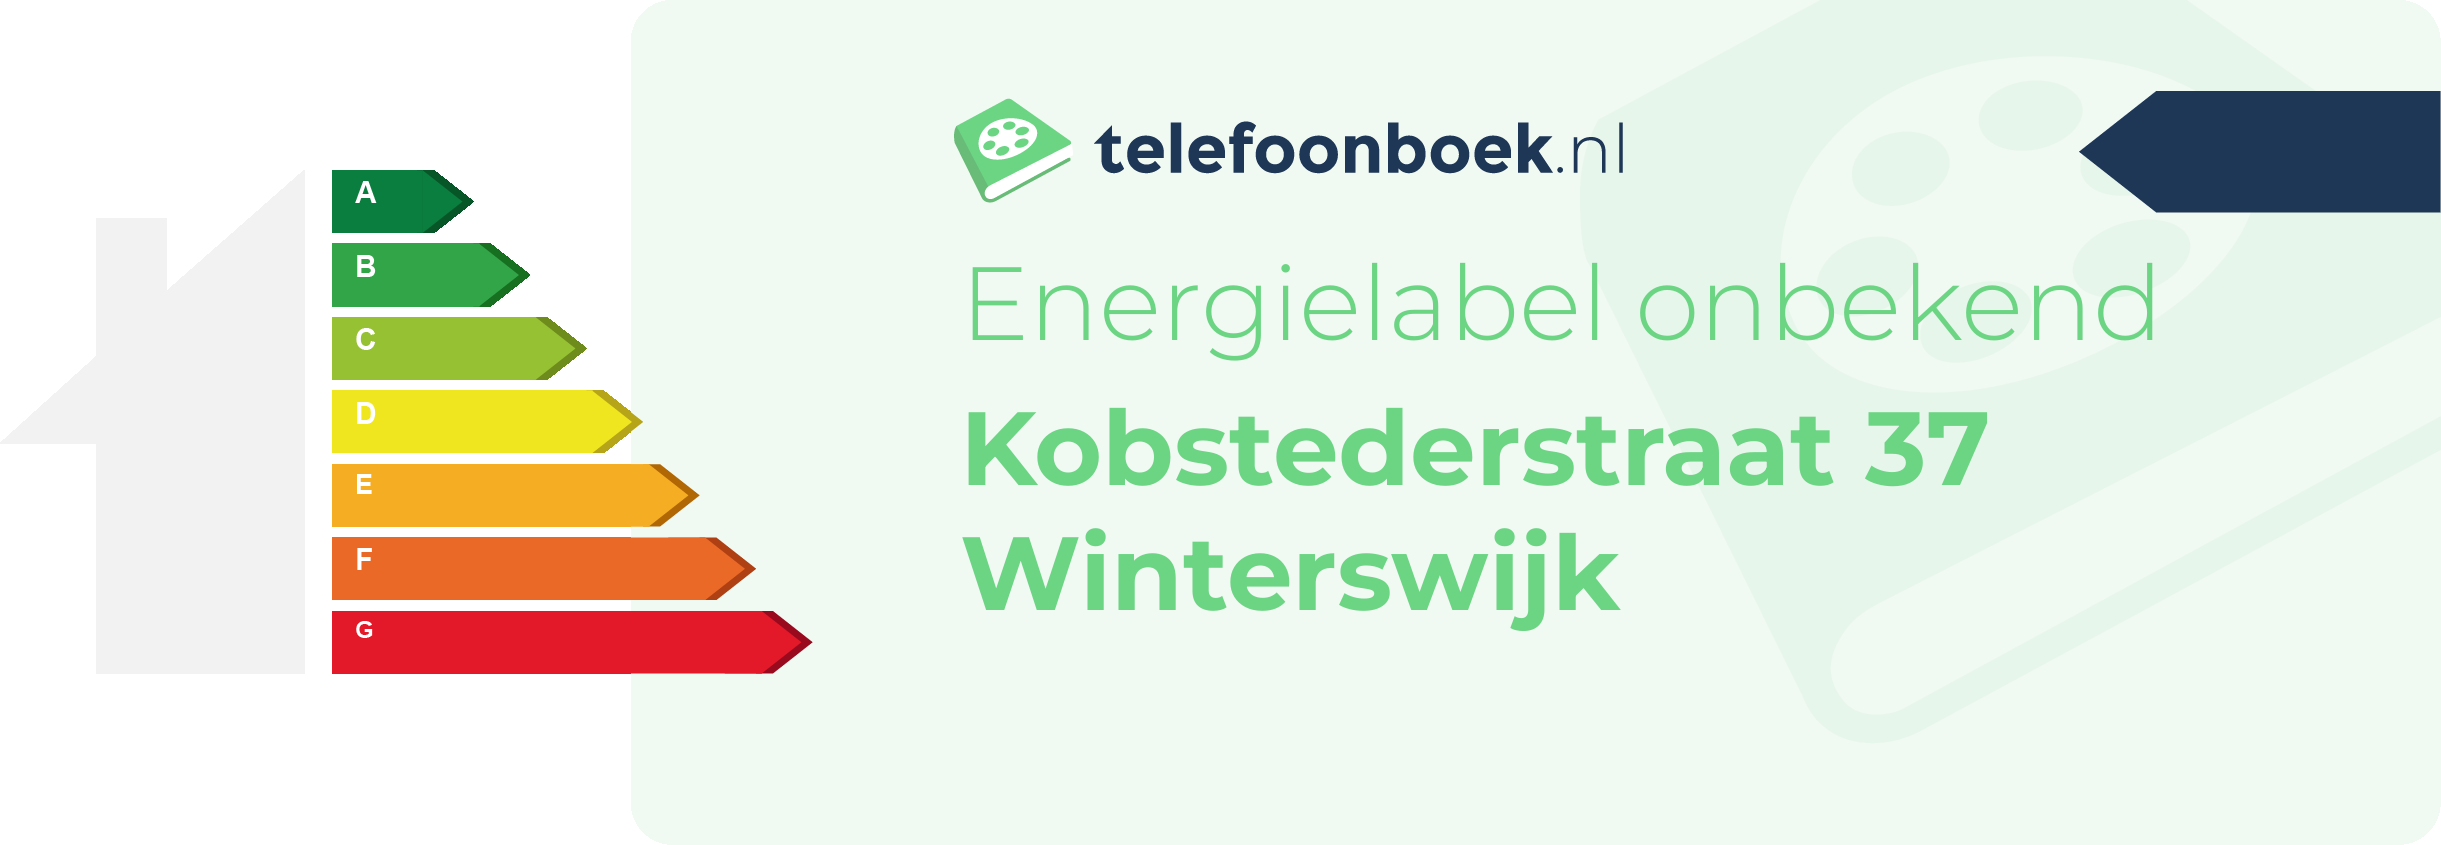 Energielabel Kobstederstraat 37 Winterswijk